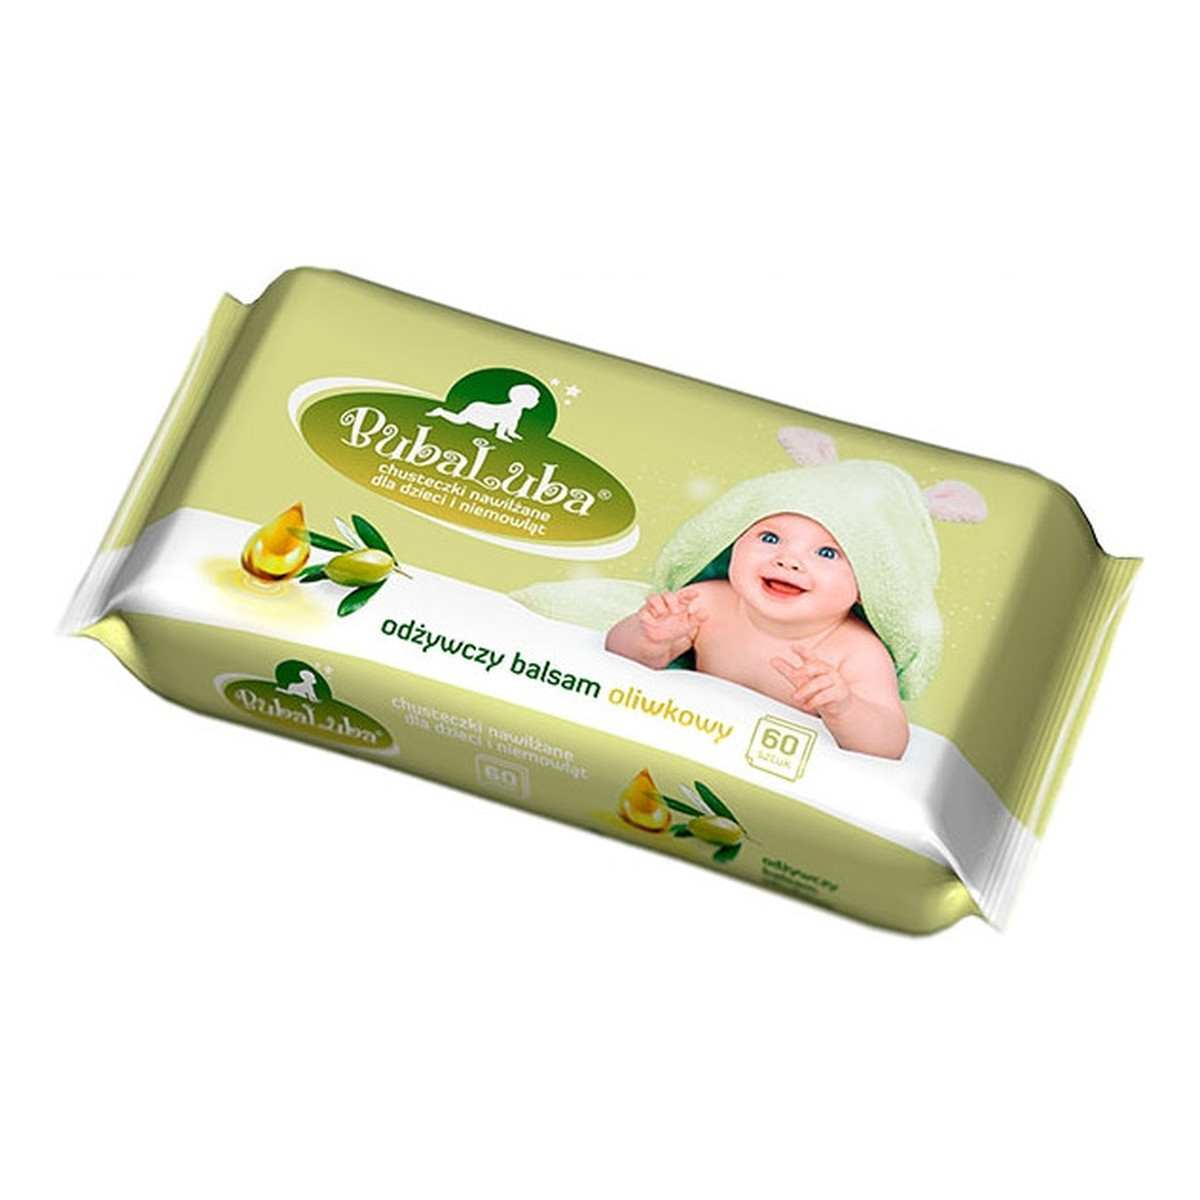 BubaLUBA chusteczki nawilżane dla dzieci odżywczy balsam oliwkowy 60szt